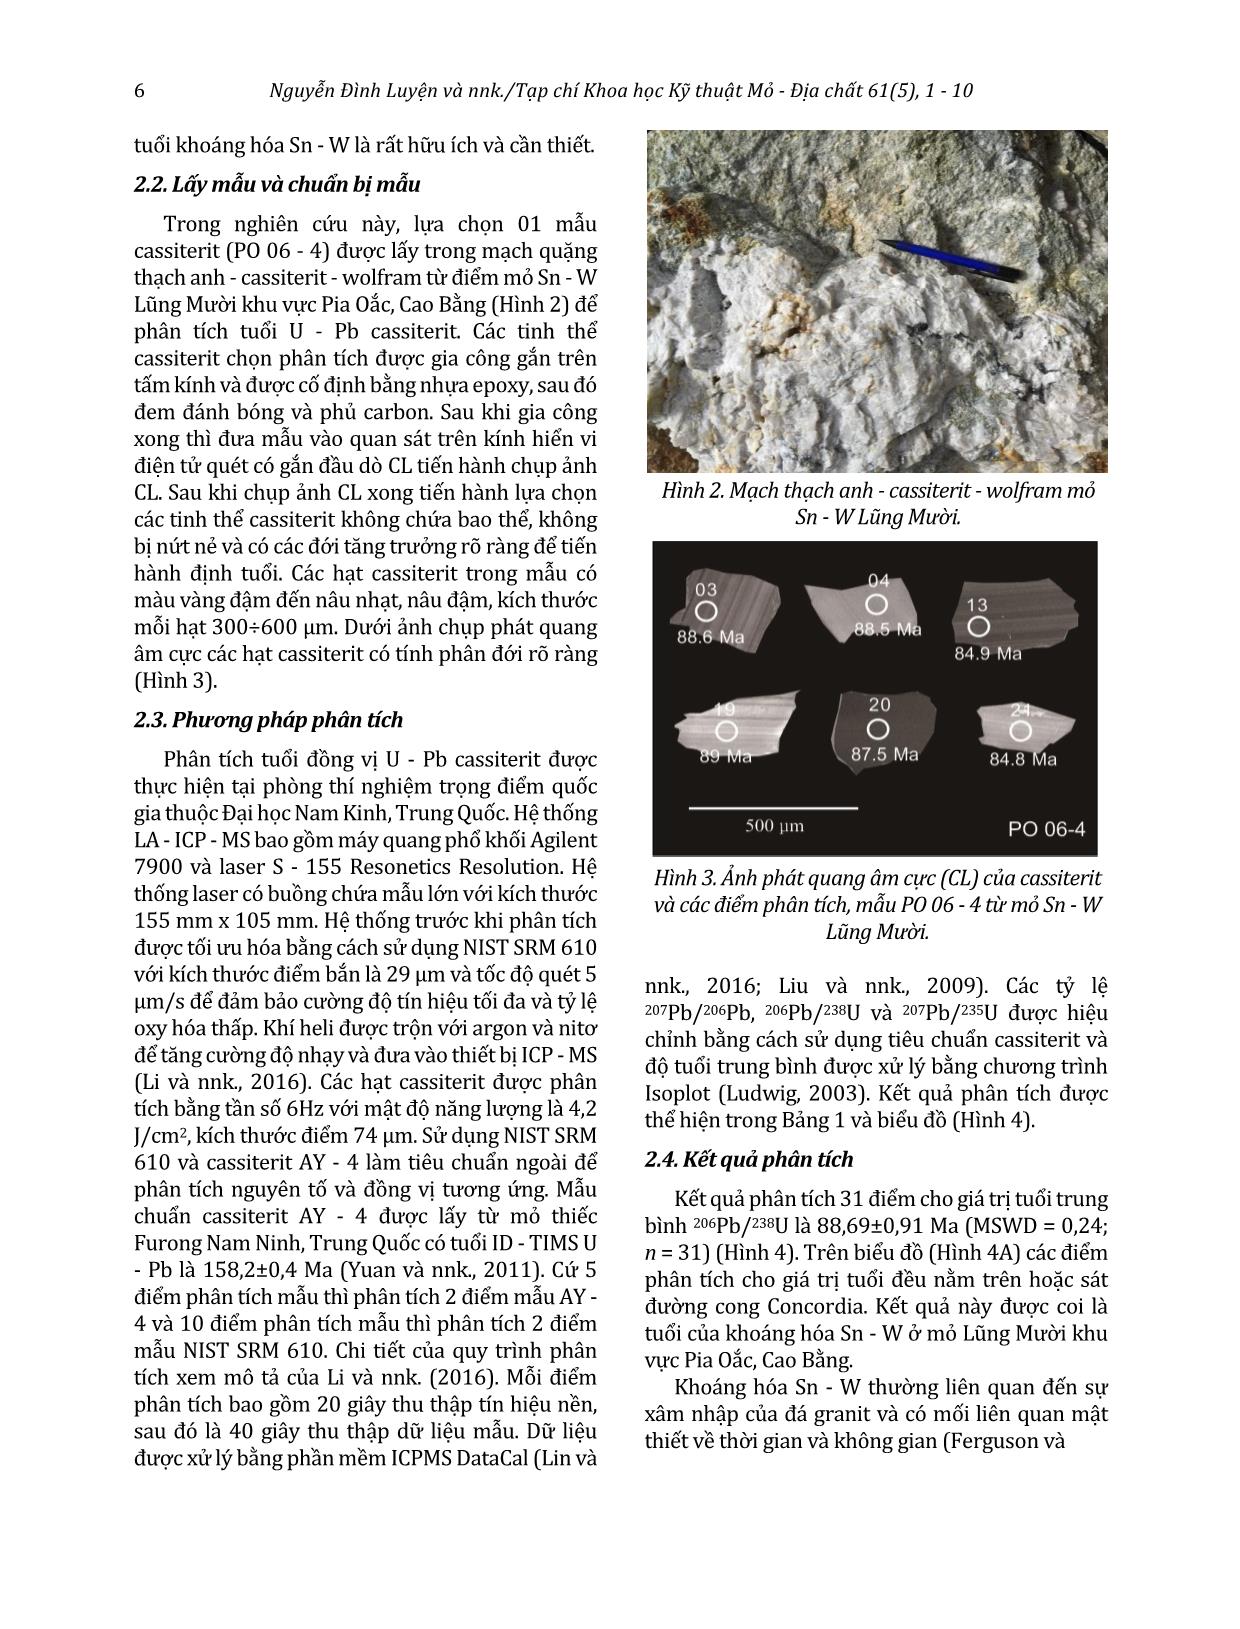 Khái quát về phương pháp định tuổi đồng vị U - Pb trong cassiterit. Áp dụng xác định tuổi khoáng hóa Sn - W mỏ Lũng Mười khu vực Pia Oắc, Cao Bằng trang 6